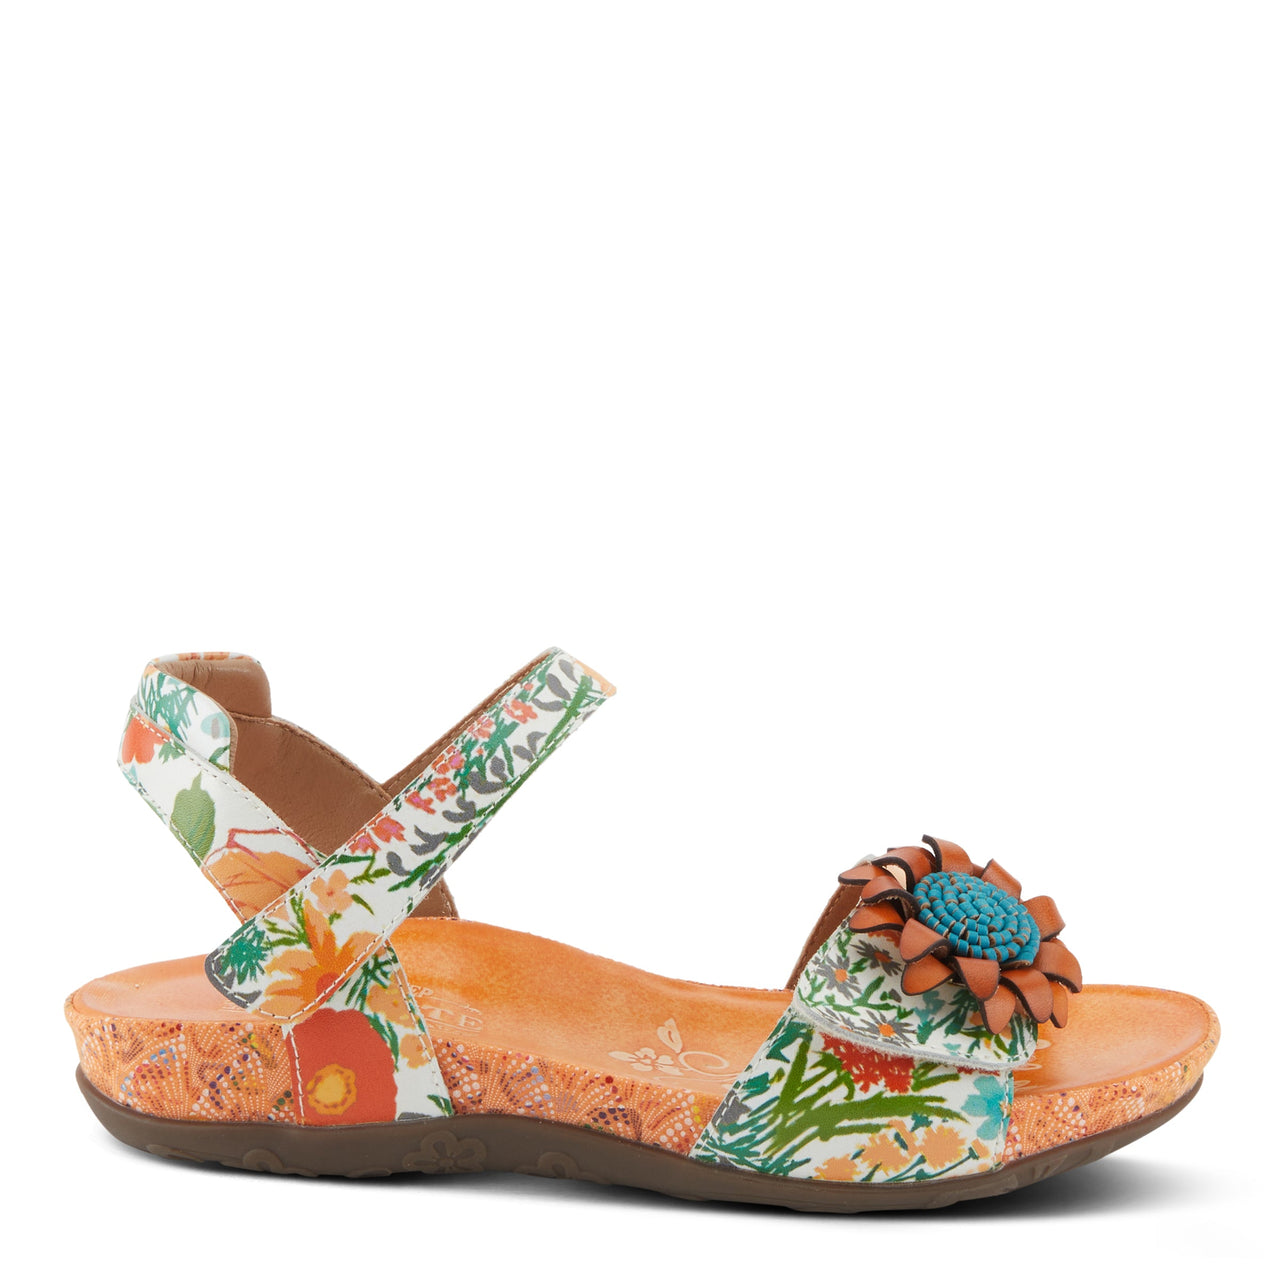 Spring Step Shoes L'Artiste Gladystee Sandals